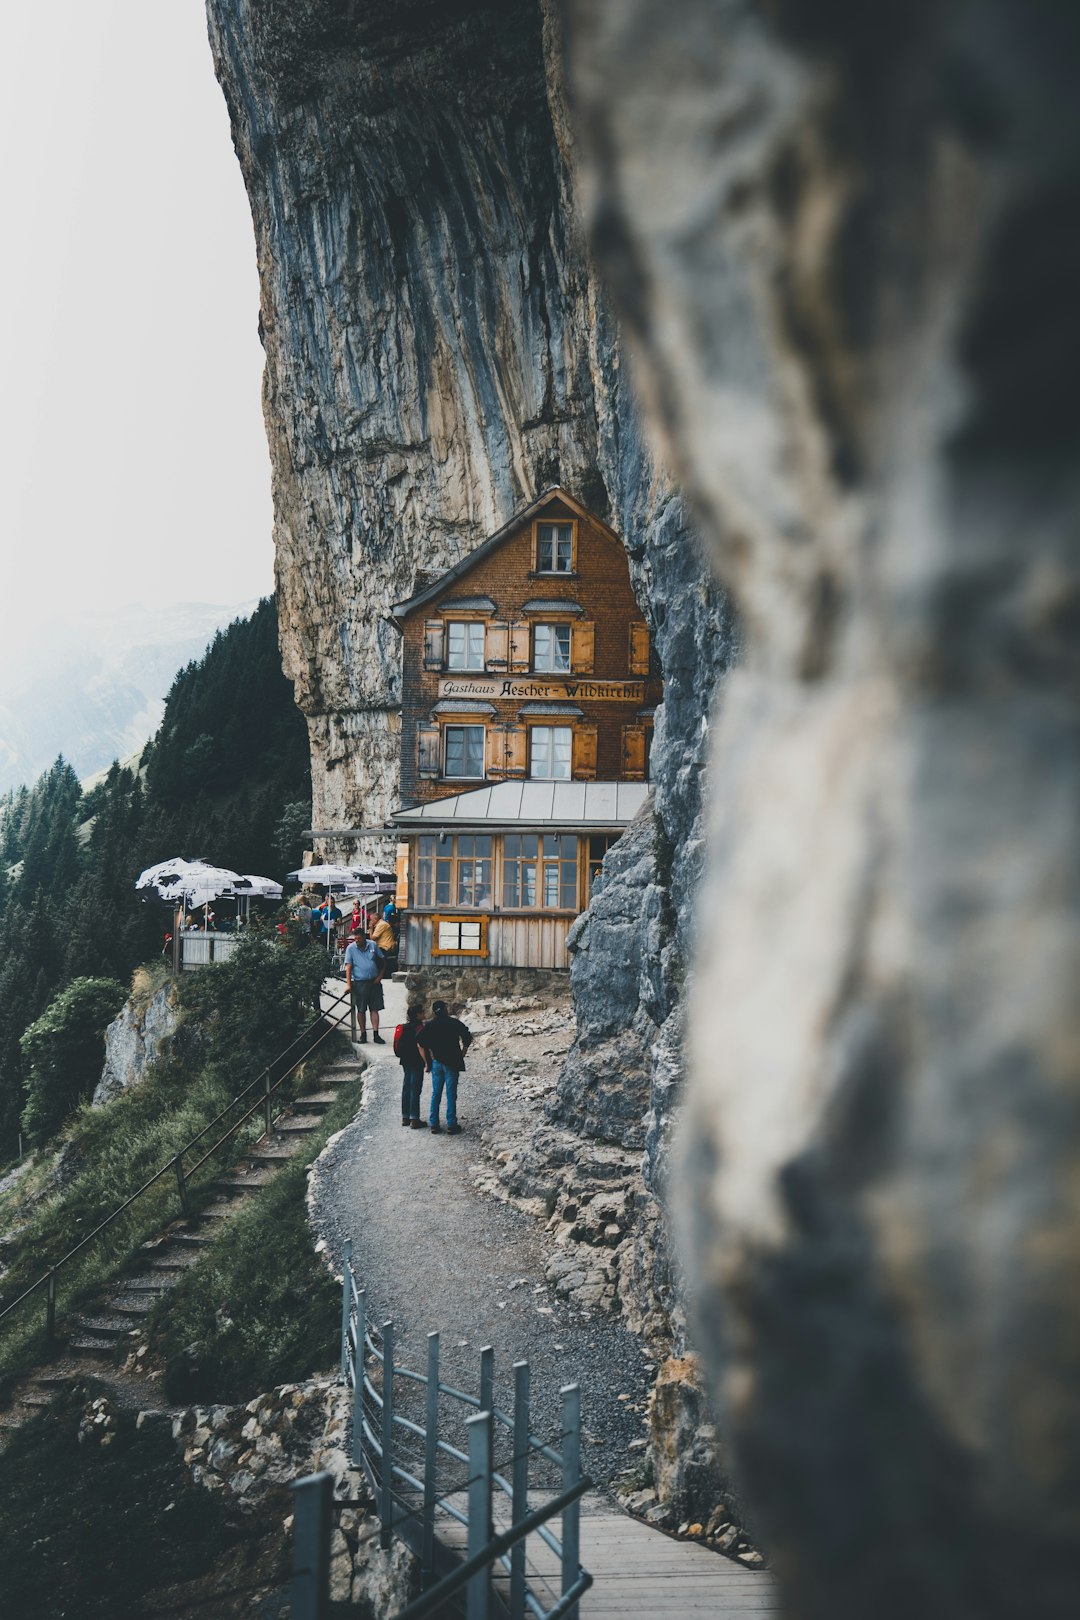 Travel Tips and Stories of Berggasthaus Aescher-Wildkirchli in Switzerland